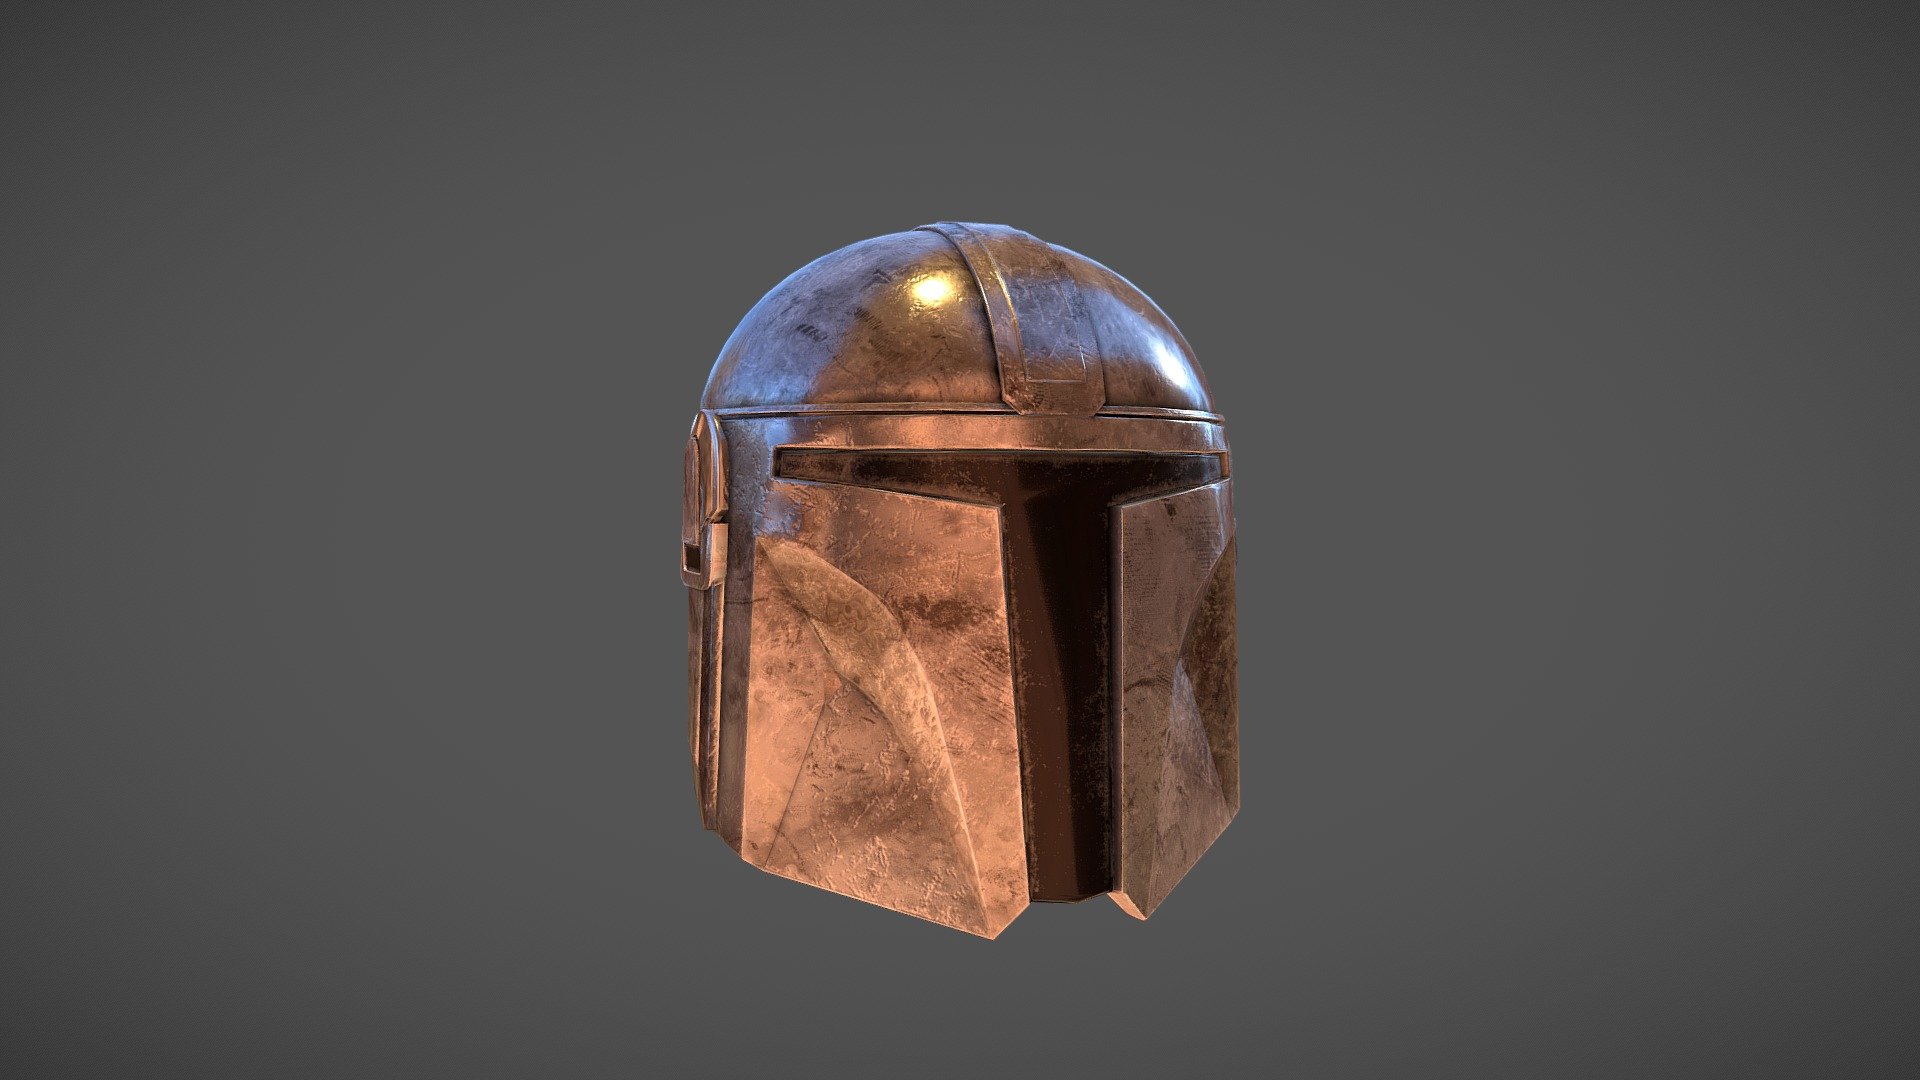 Mandalorian helm